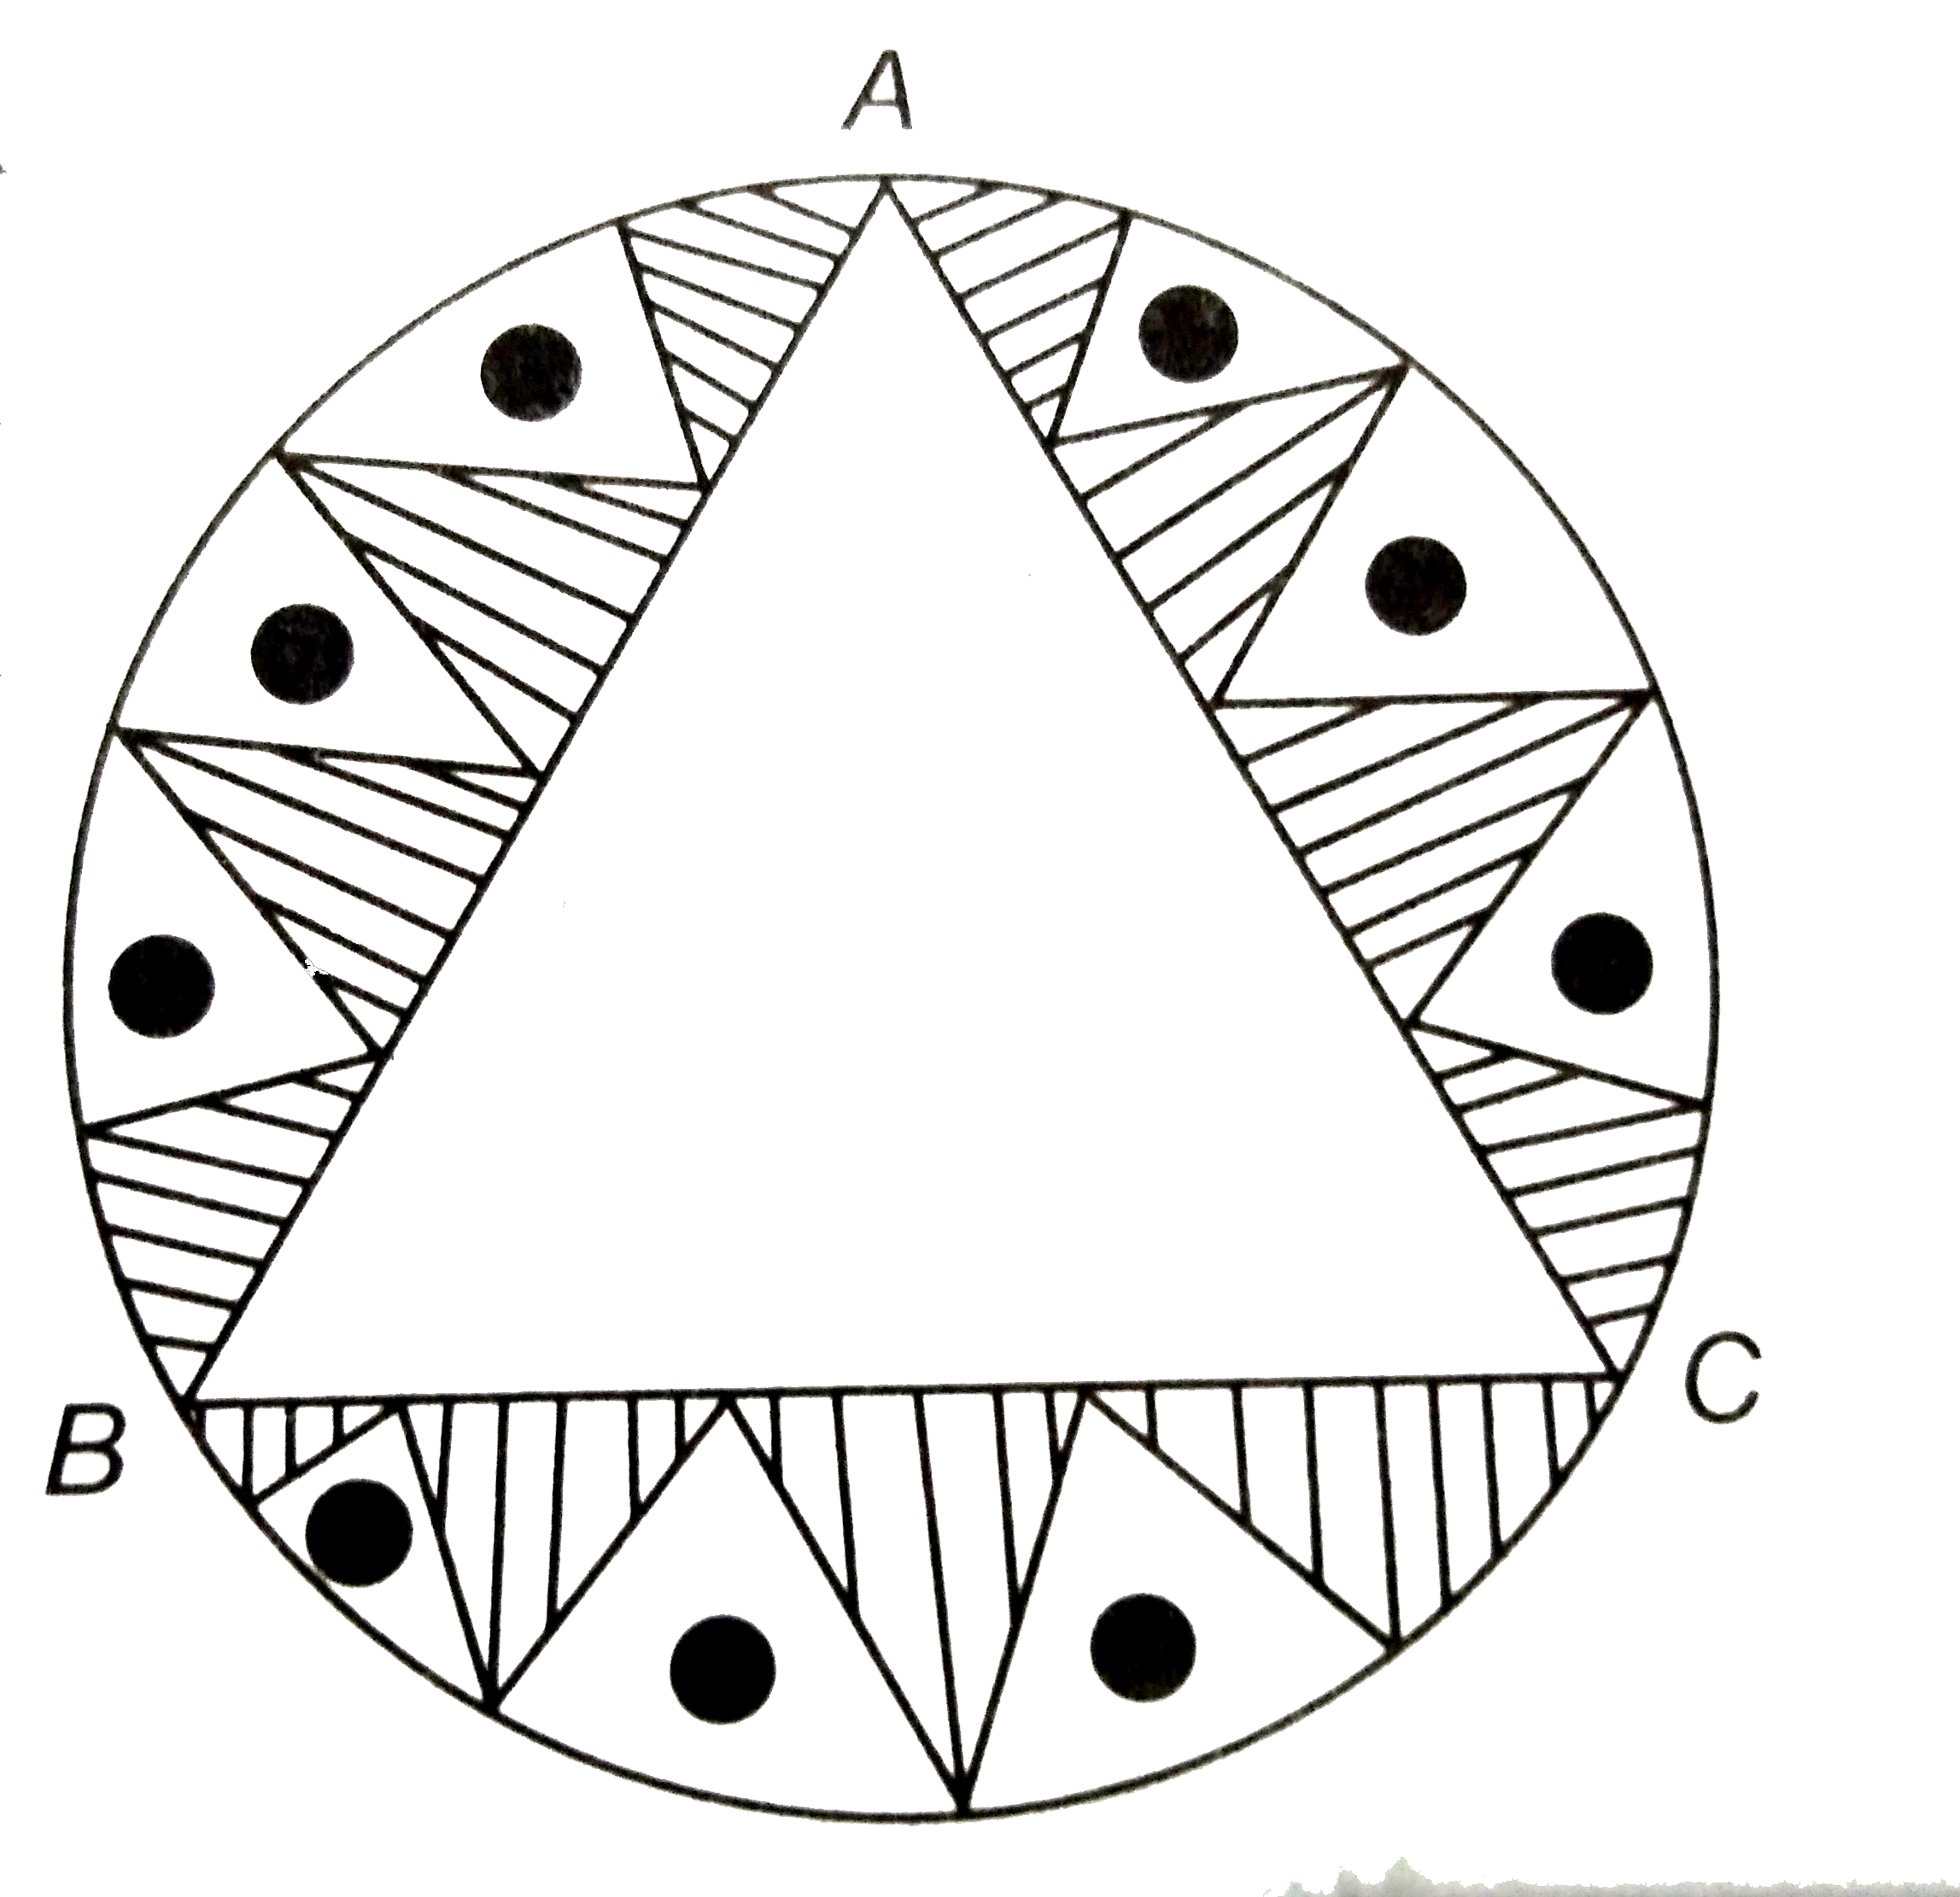 एक वृत्ताकार  मेजपोश  , जिसकी त्रिज्या  32  सेमी है , में  बीच  में एक समबाहु  त्रिभुज  ABC  छोड़ते हुए  एक डिजाइन  बना हुआ है , जैसाकि आकृति में  दिखाया  गया है । इस  डिजाइन  का क्षेत्रफल  ज्ञात कीजिए।